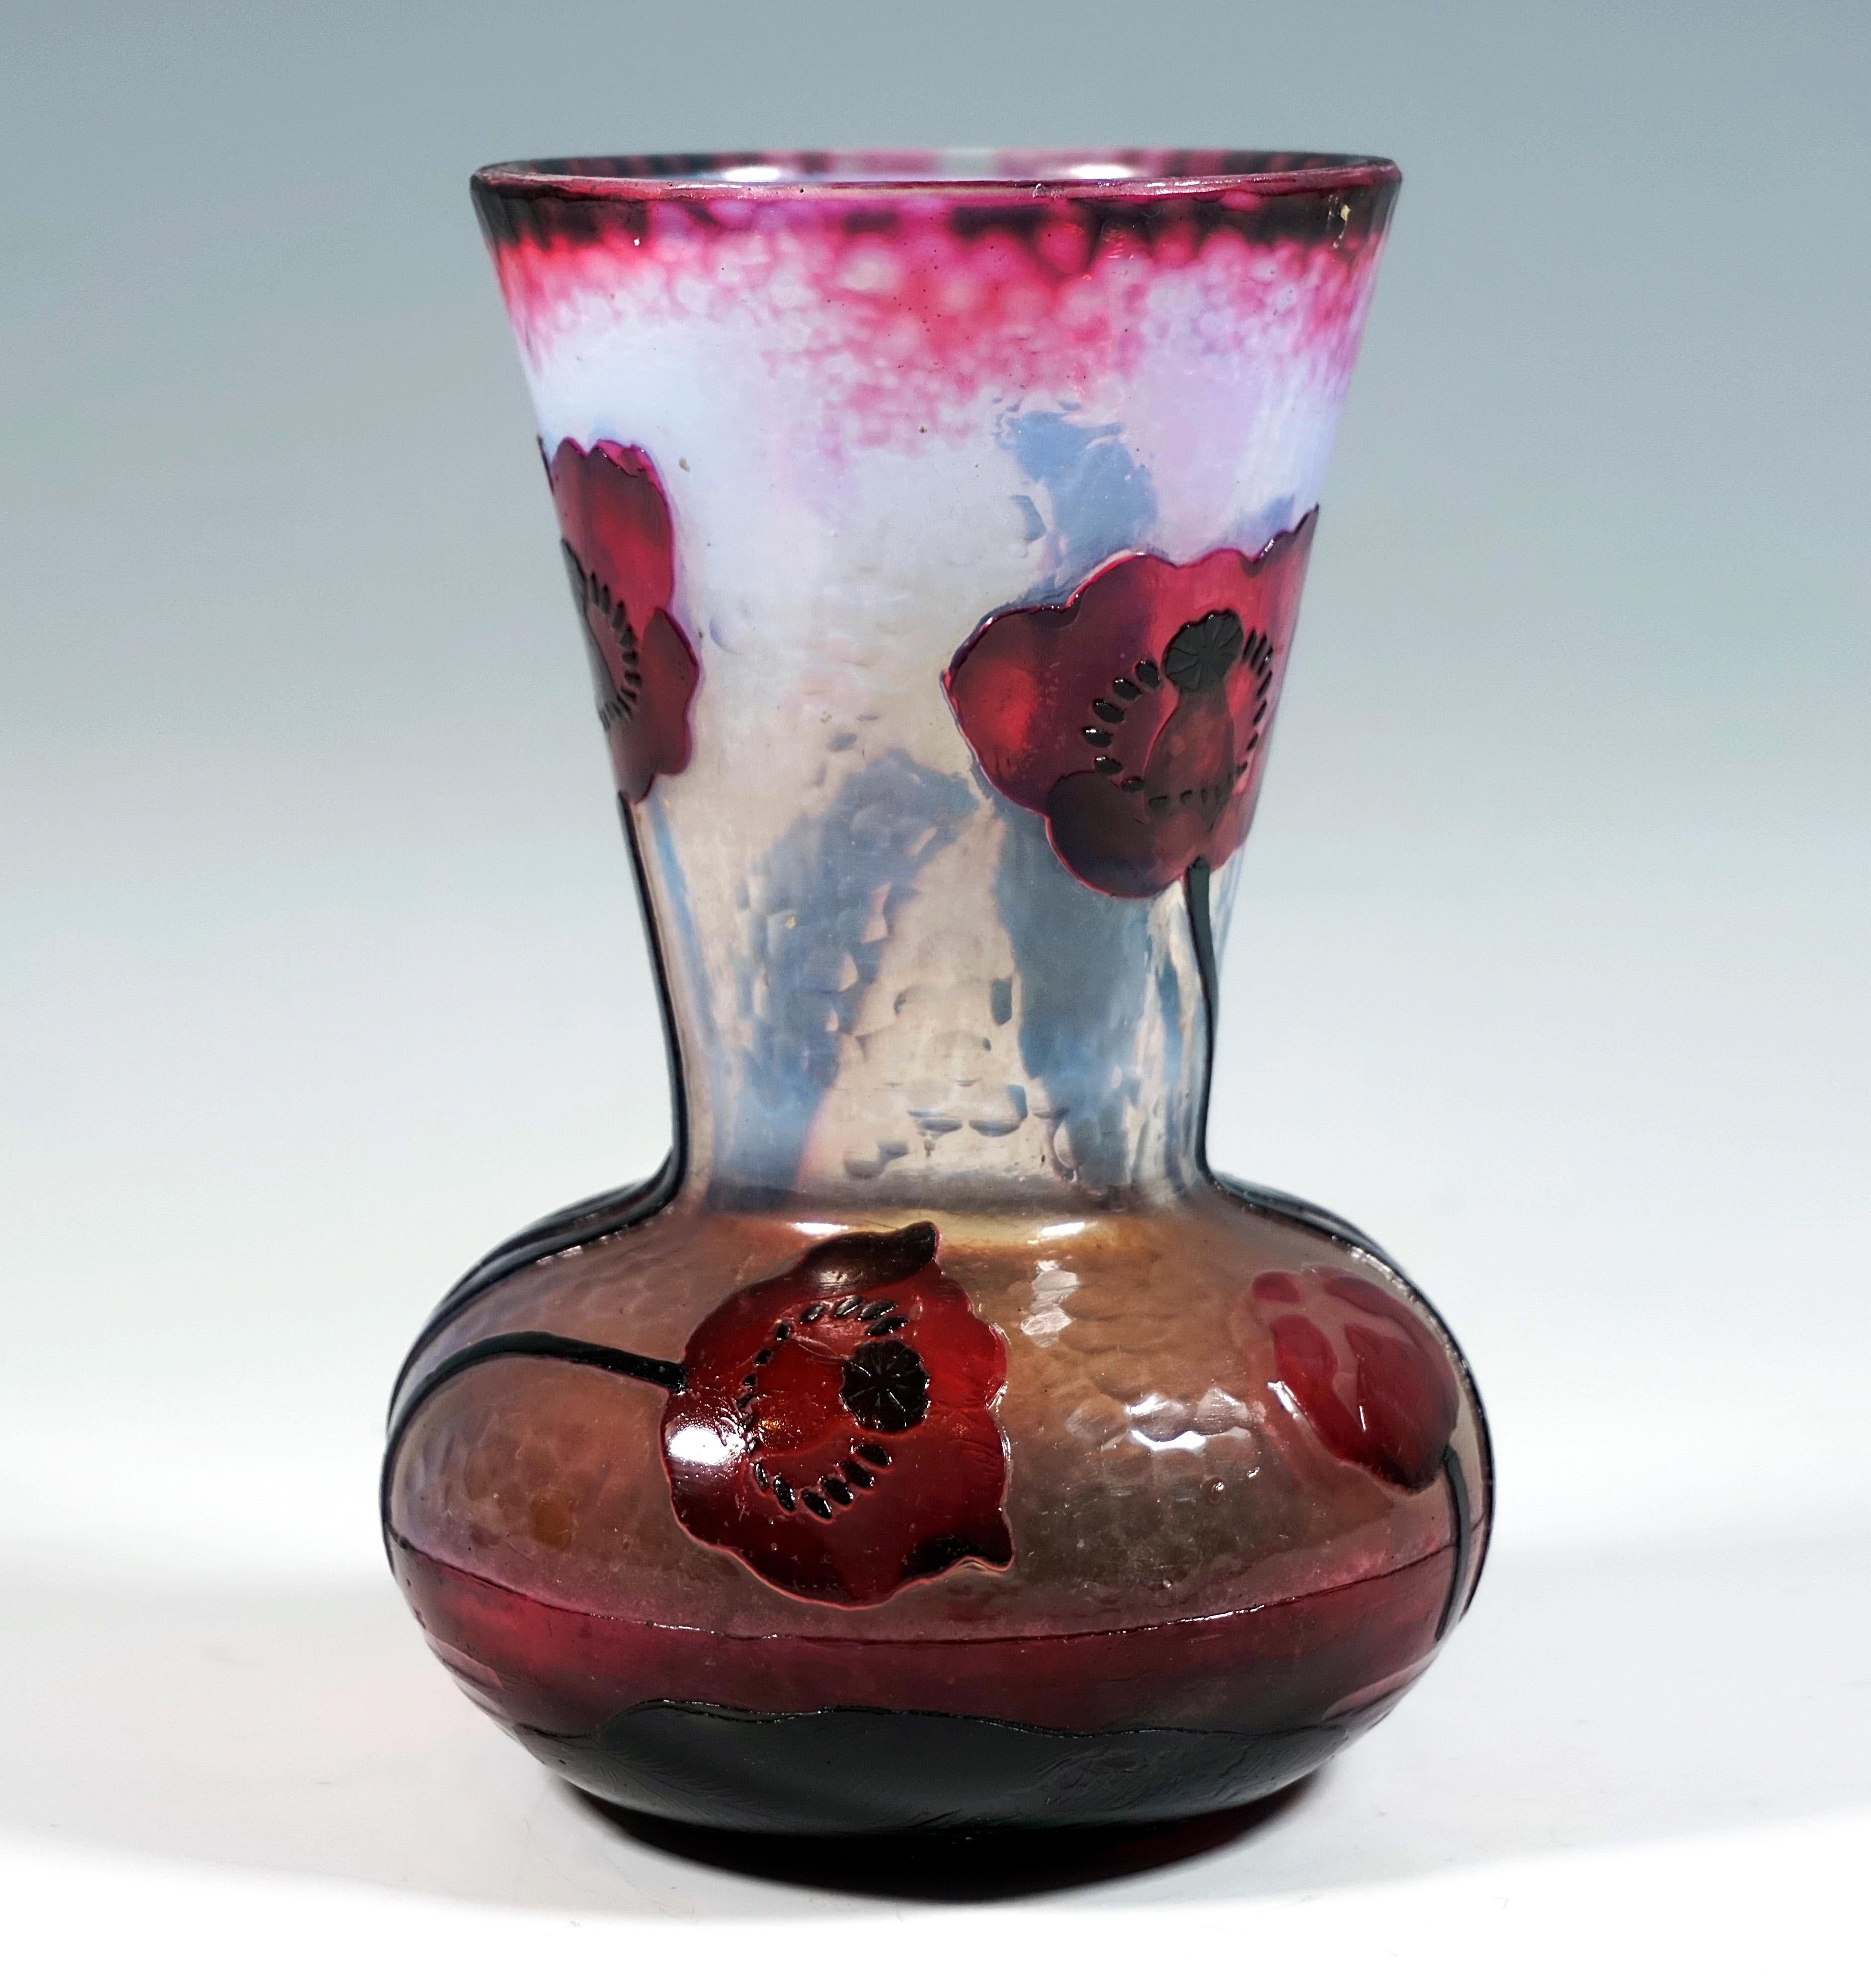 Vase de forme bulbeuse avec une base ronde décalée, un large col qui se rétrécit vers le haut avec un bord légèrement évasé, verre incolore avec un fondant intérieur laiteux et opaque dans la partie inférieure, fondant vert foncé et orange à rose